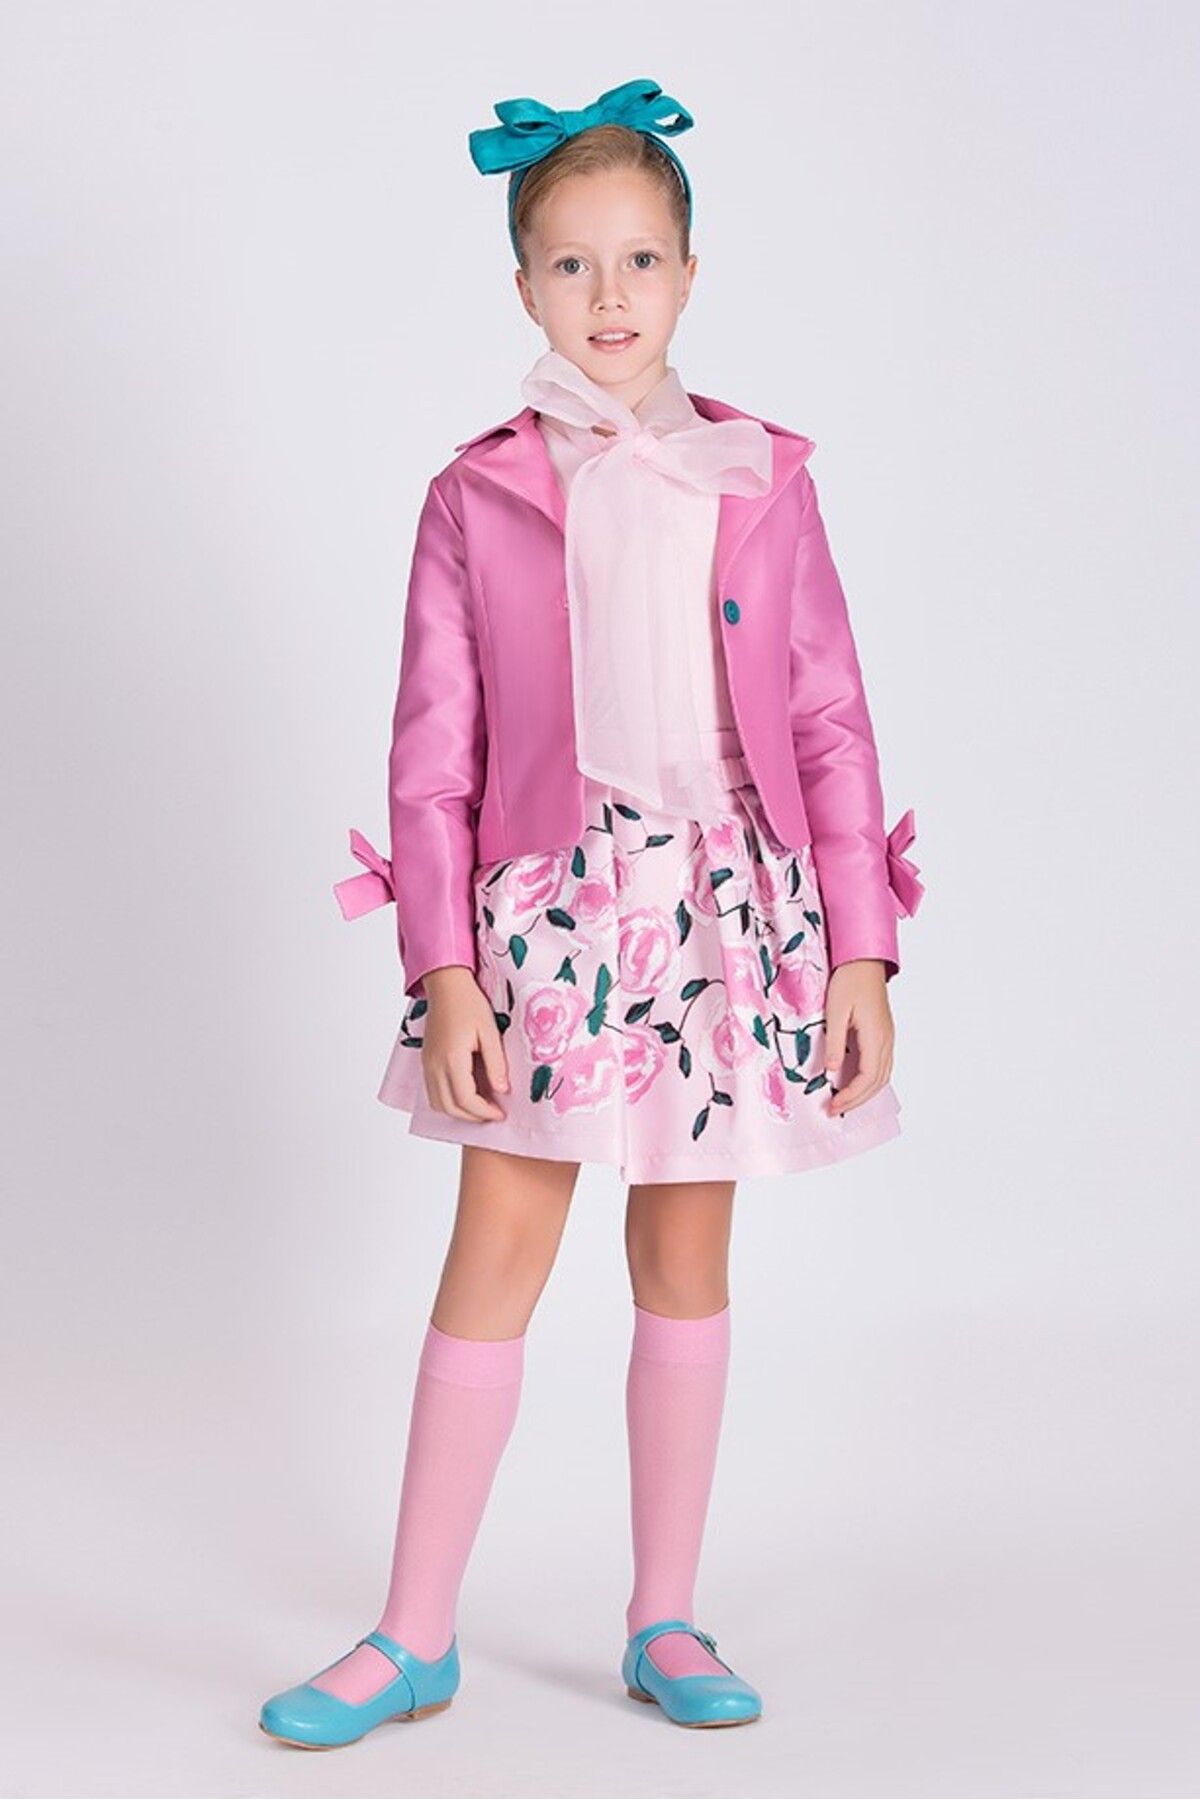 Goose Kız Çocuk Yakası Fiyonklu Pembe Bluz Çiçek Baskılı Etek Pembe Ceket Kombini | 3 Parça